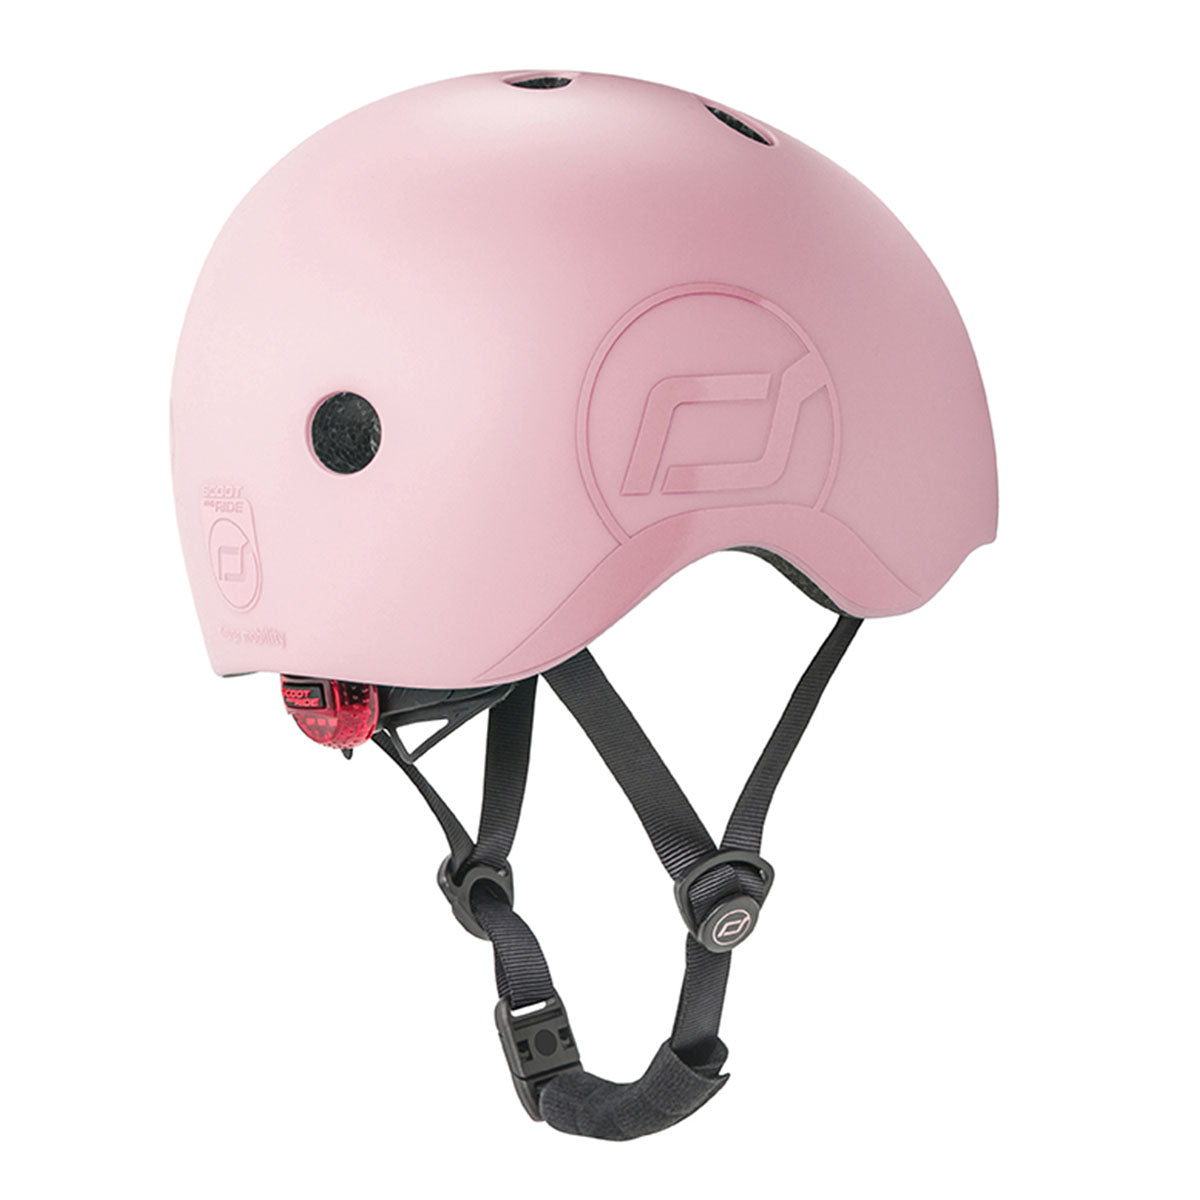 Met de Scoot and Ride helm S rose kan je jouw kindje met een gerust hart op pad laten gaan op de fiets, skates of step. Deze stoere kinderhelm beschermt het hoofdje van jouw kind tijdens het vallen. VanZus.